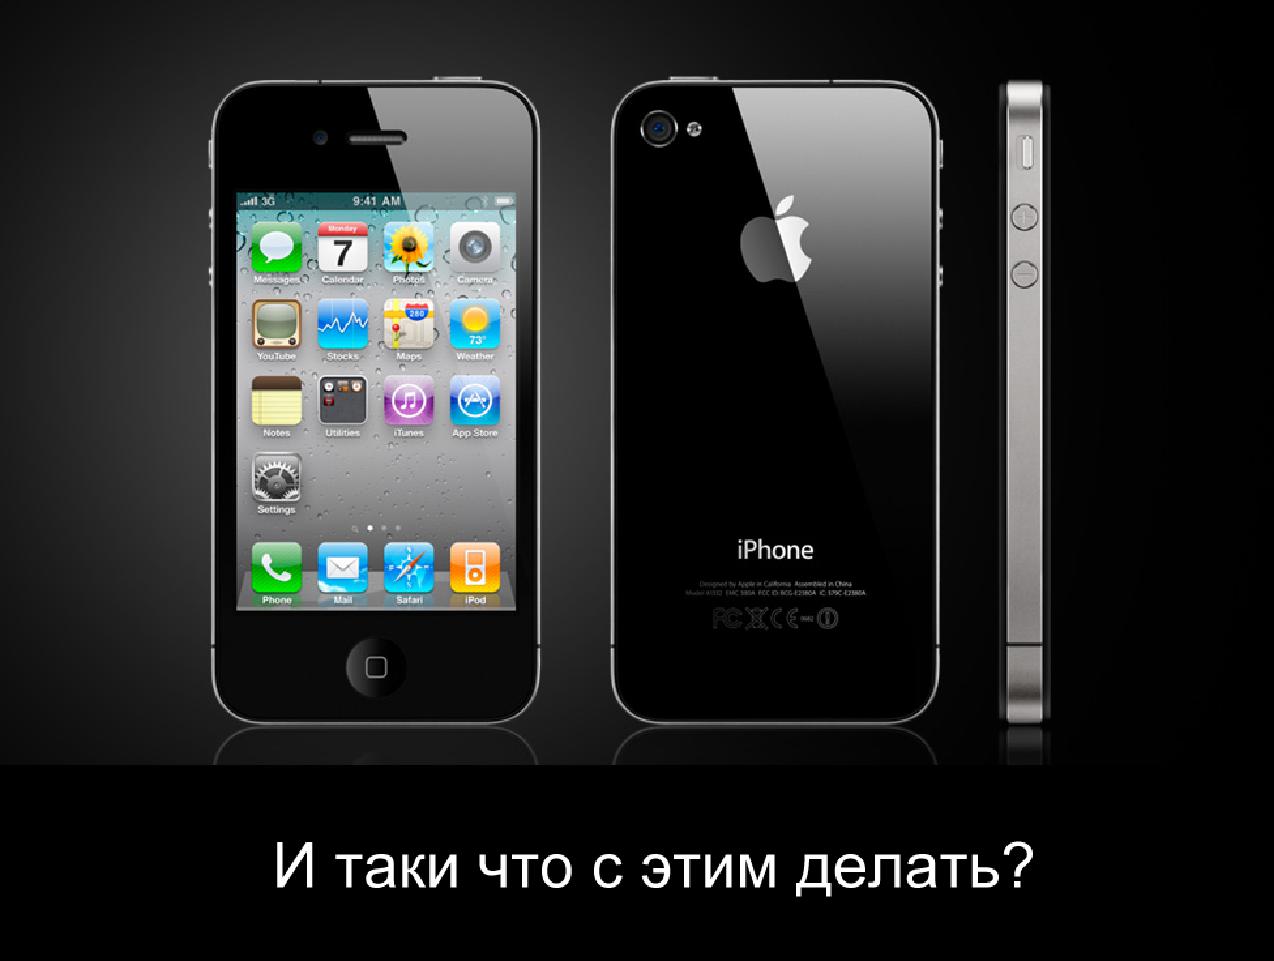 Как начать разрабатывать для iPhone (Никита Фролов на ADD-2010).pdf